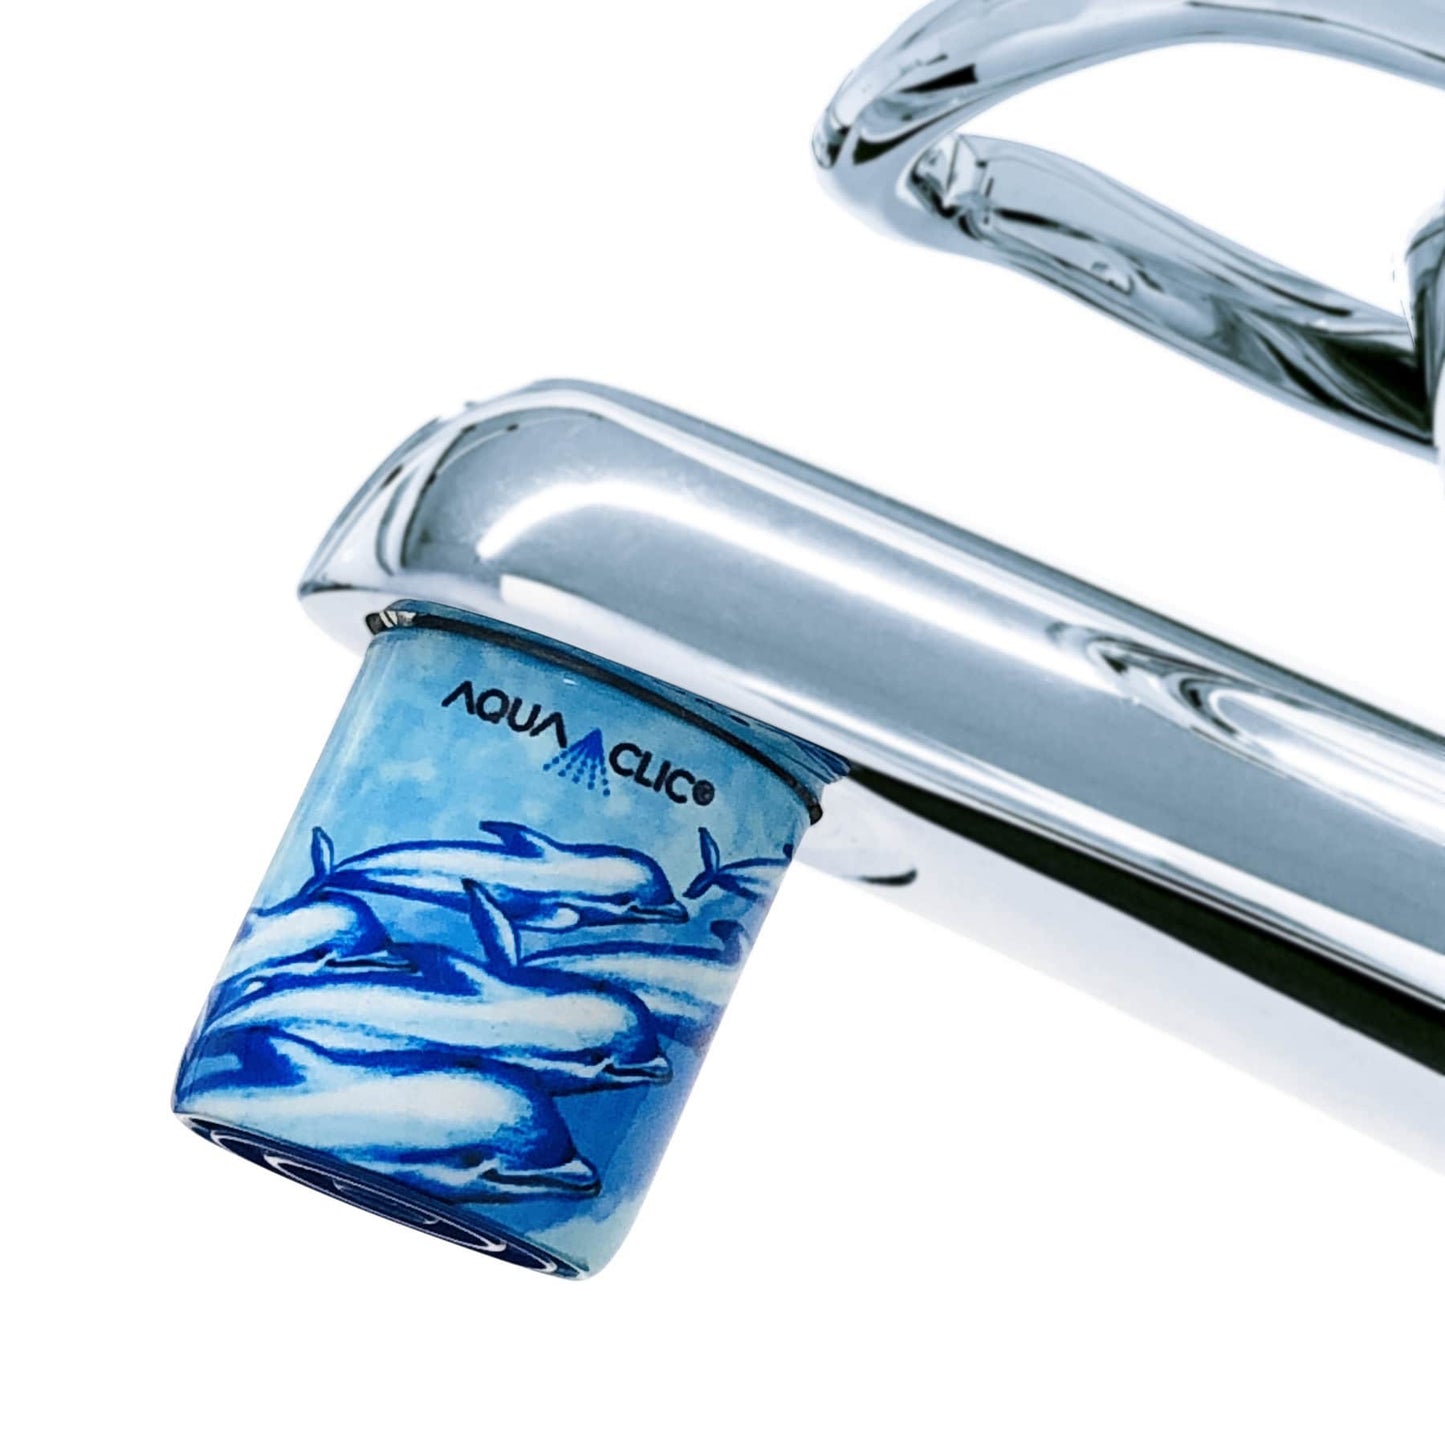 AquaClic-Strahlformer am  Friends-Design-Wasserhahn: spart Wasser, Energie und Kosten